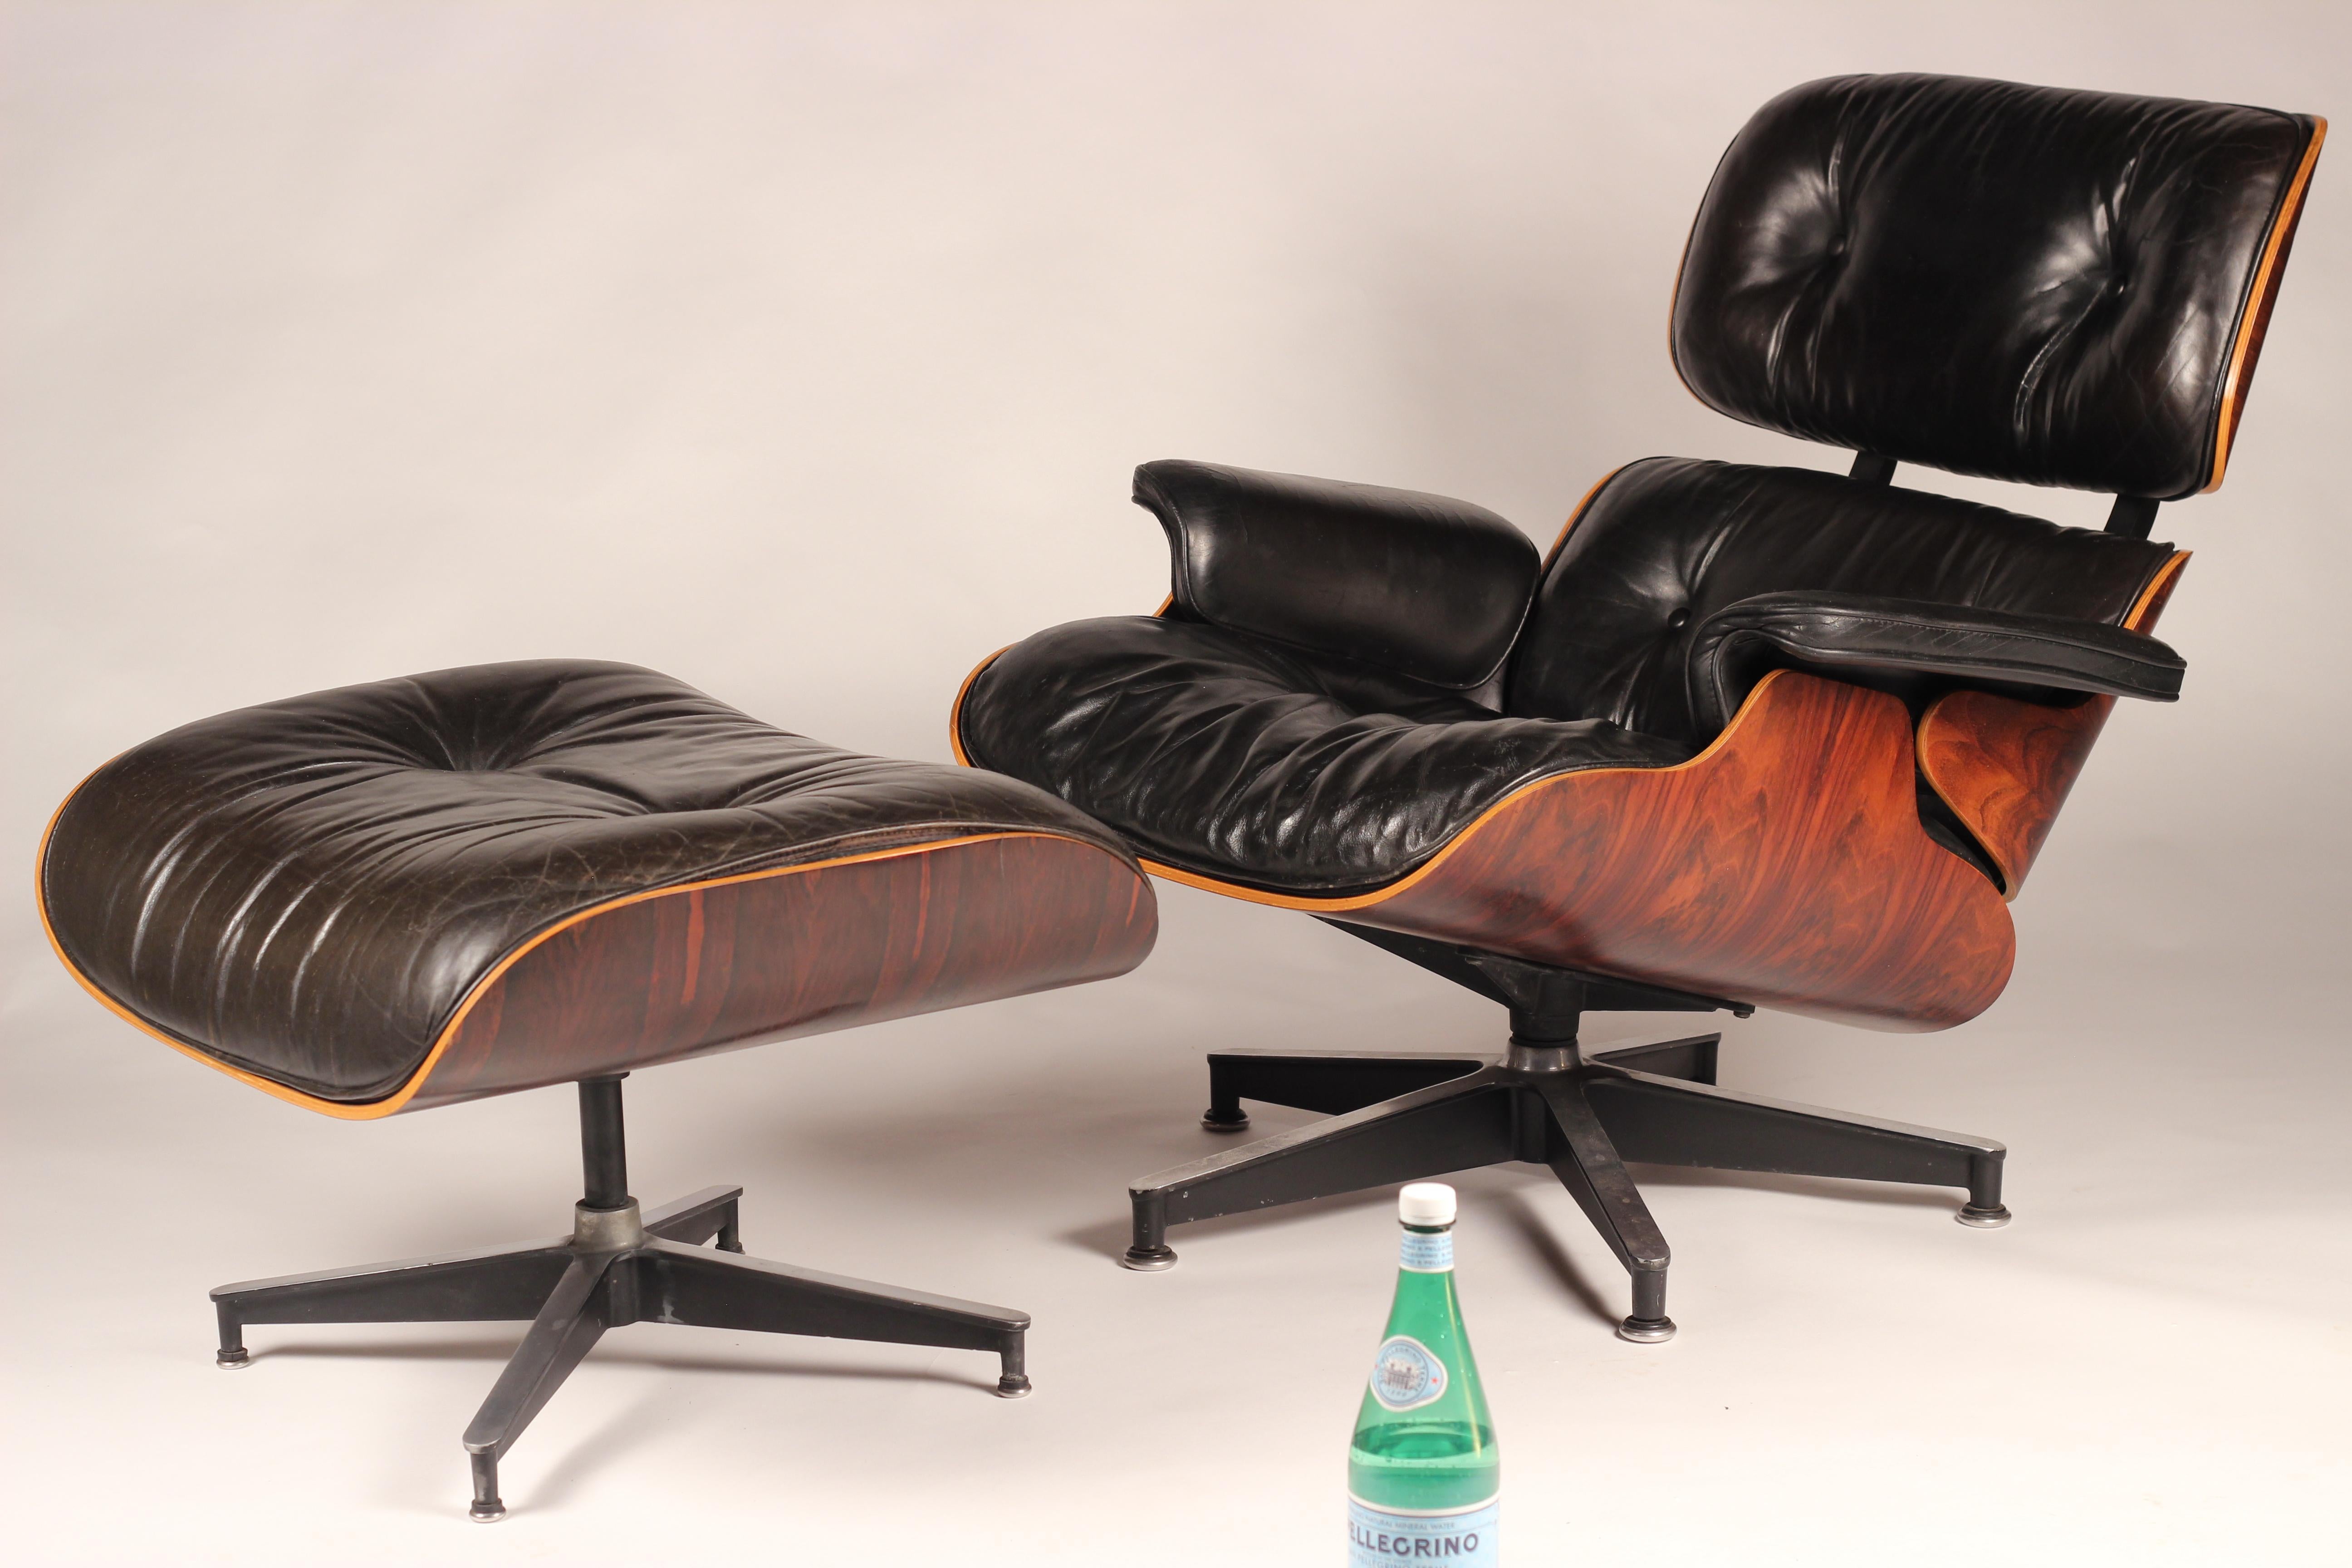 Chaise longue Charles et Ray Eames

La chaise longue et l'ottoman Eames sont des meubles en contreplaqué moulé et en cuir, conçus par Charles et Ray Eames pour la société de meubles Herman Miller. Ils sont officiellement intitulés Eames lounge 670